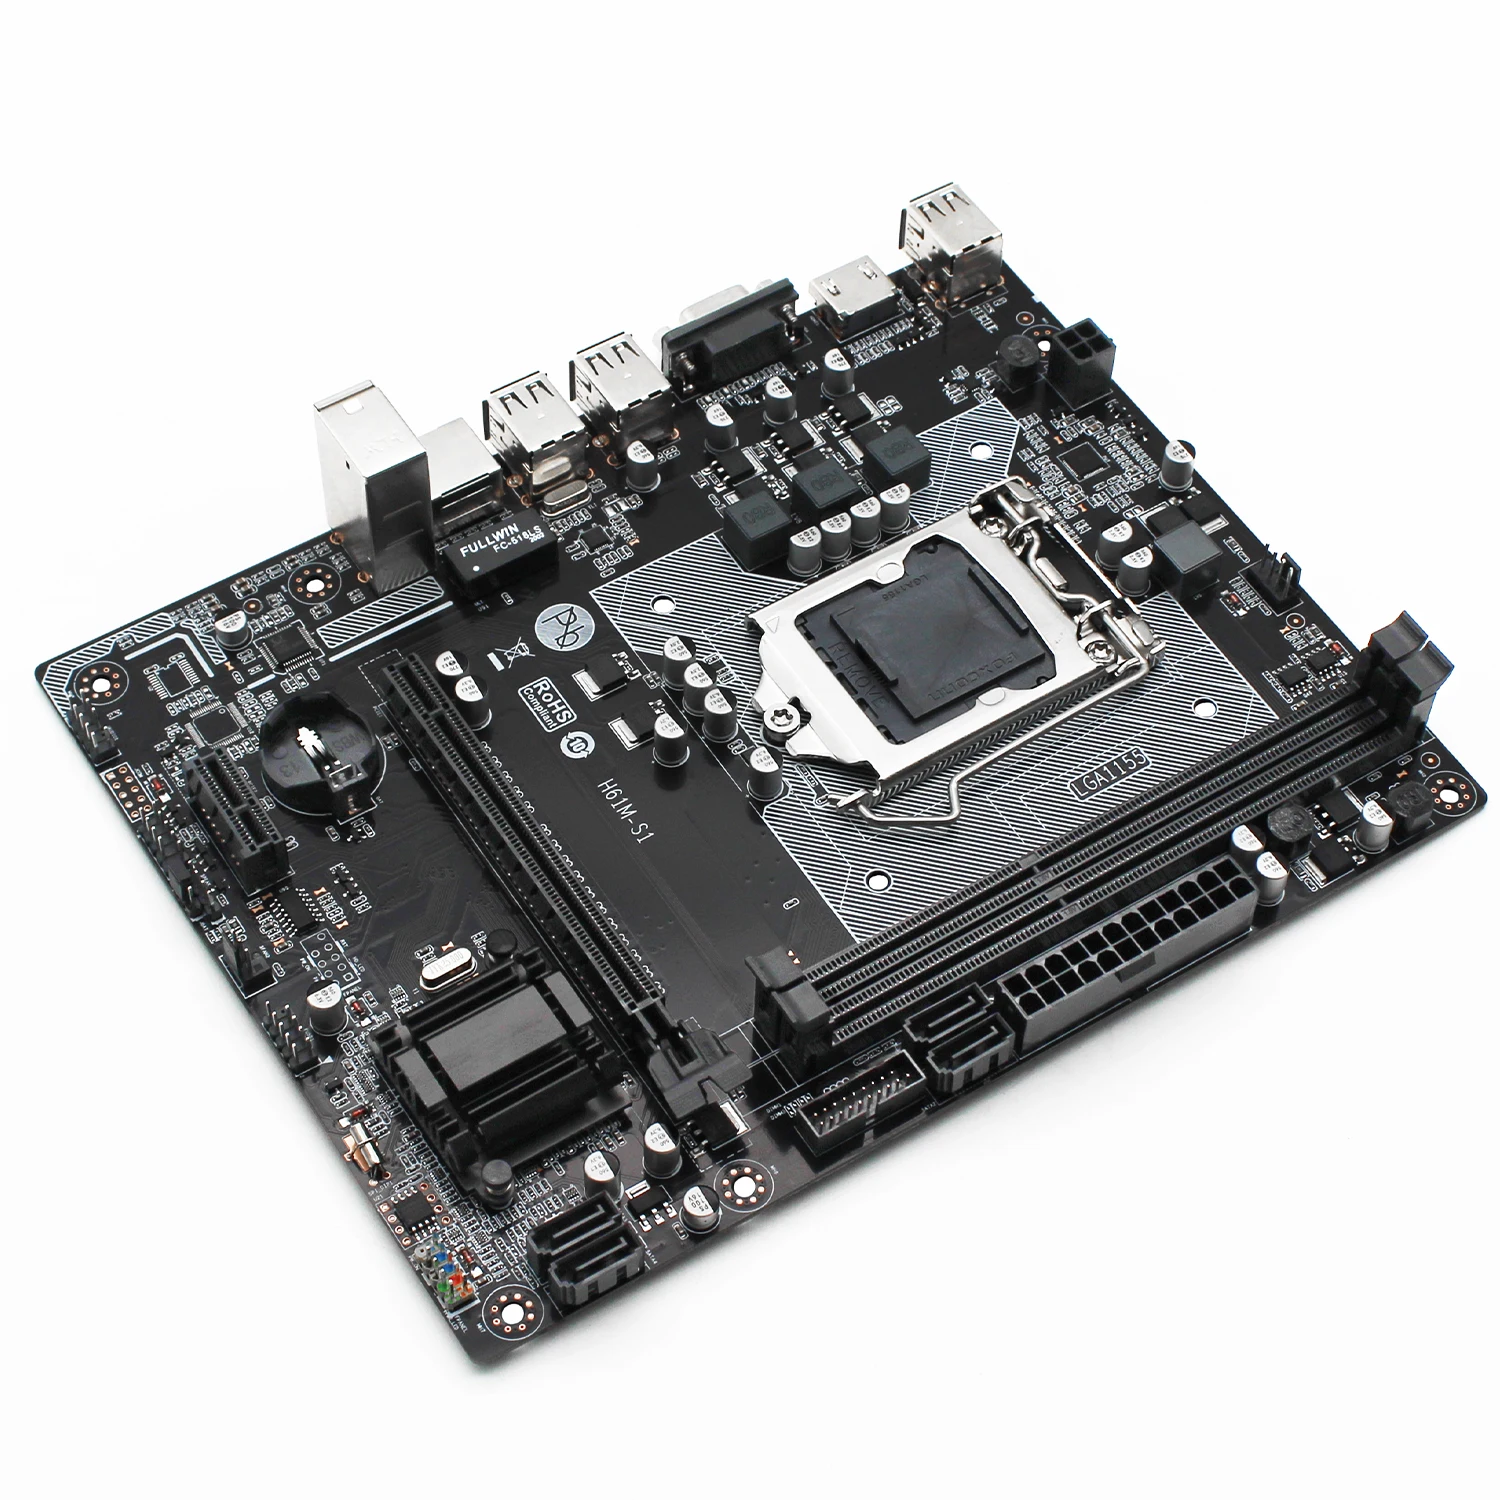 H61 placa-mãe LGA 1155 kit gamer de pc com processador Intel Pentium G2130 processador memória DDR3 8GB(2*4GB) 1600mhz trabalho de memória RAM H61M-S1